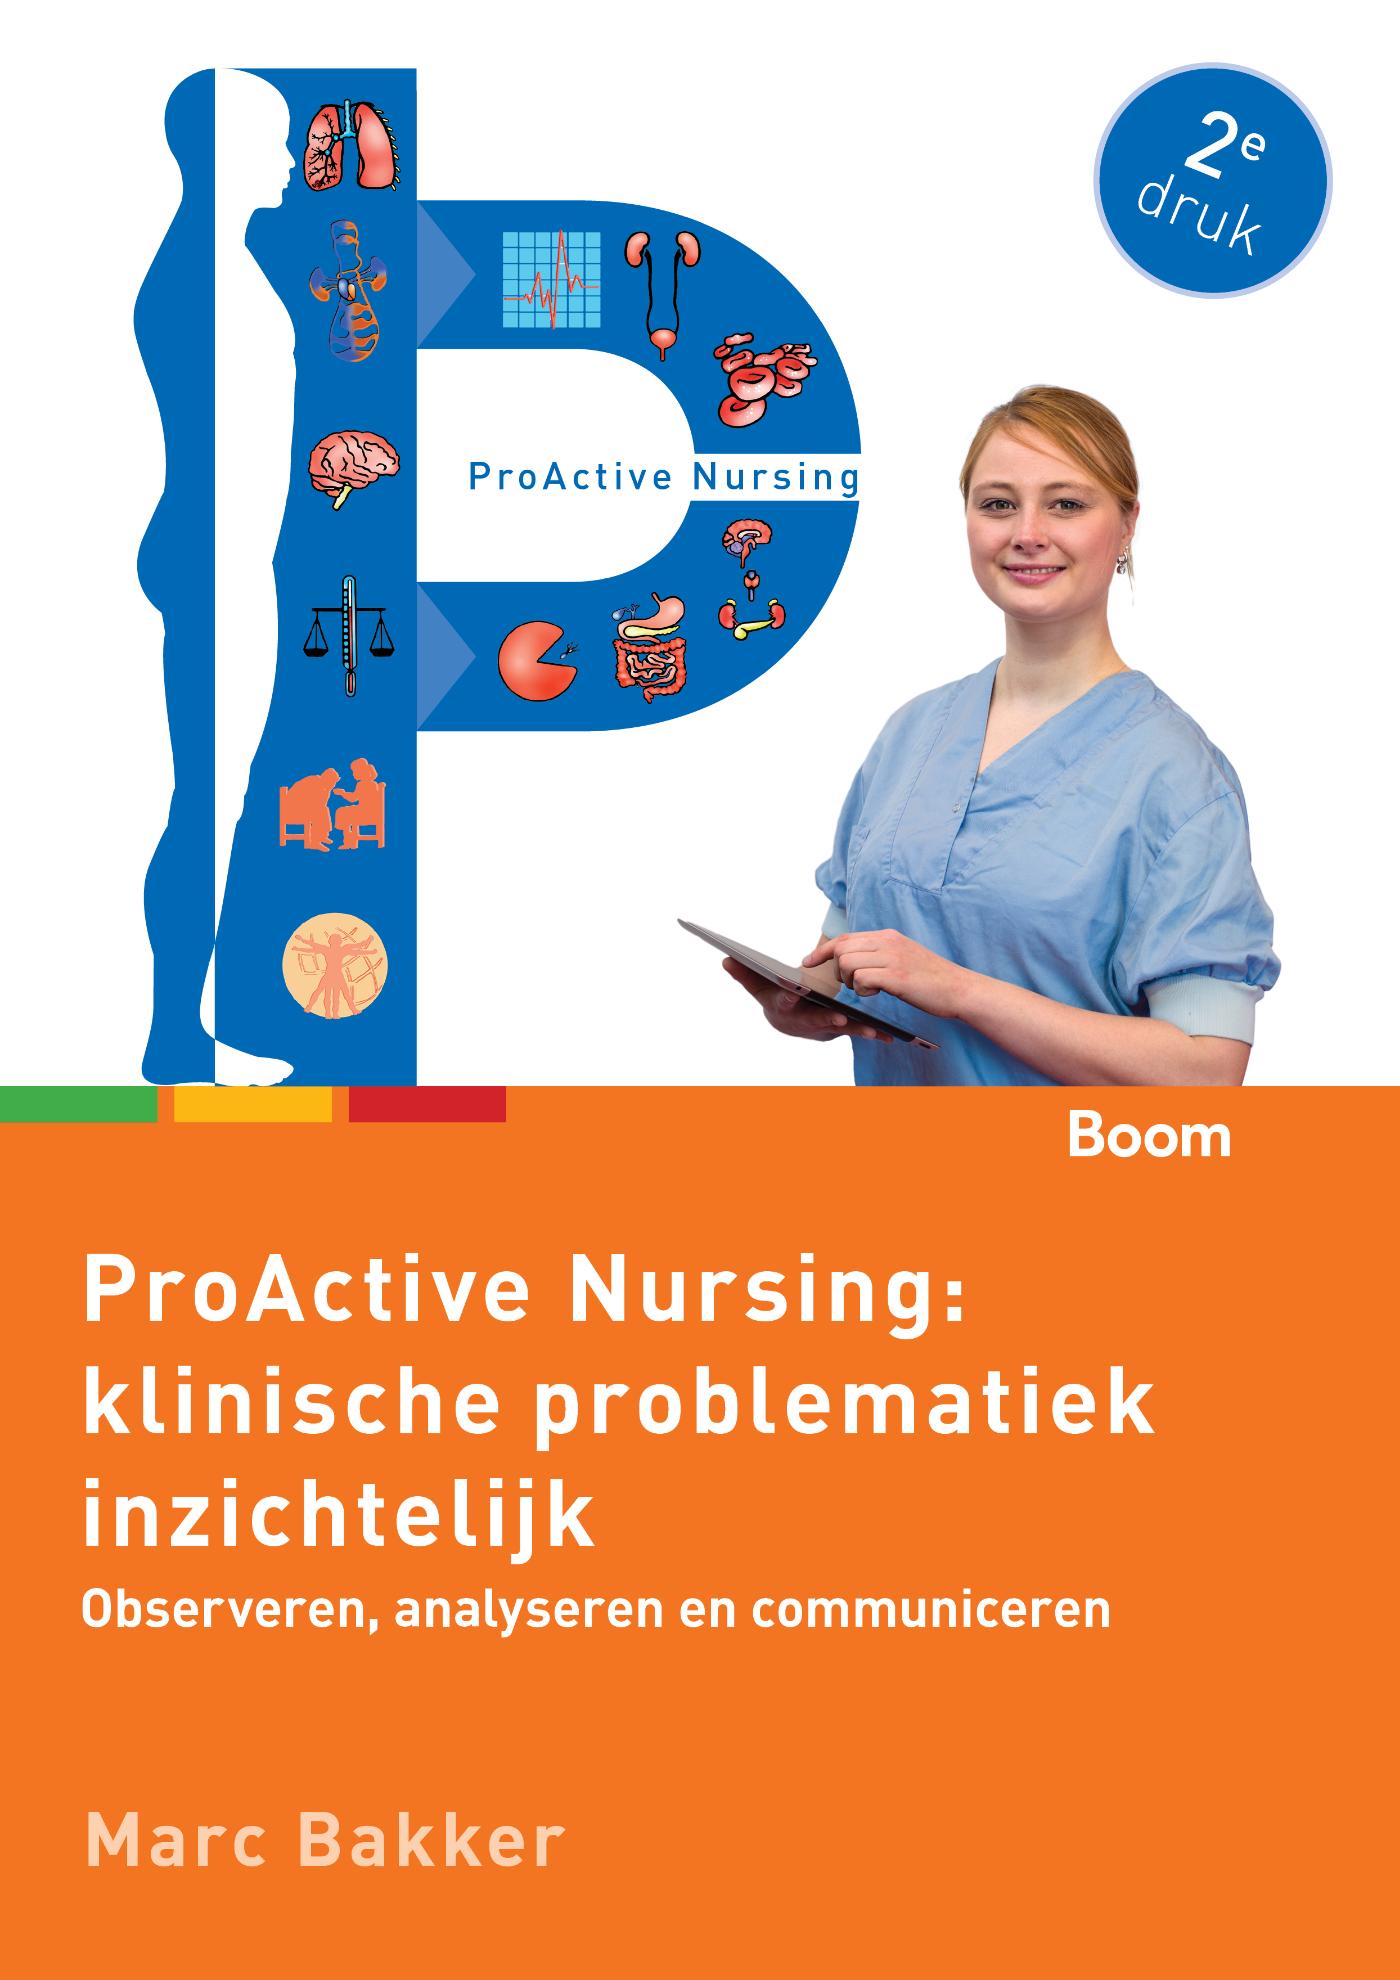 ProActive Nursing: klinische problematiek inzichtelijk (Ebook)